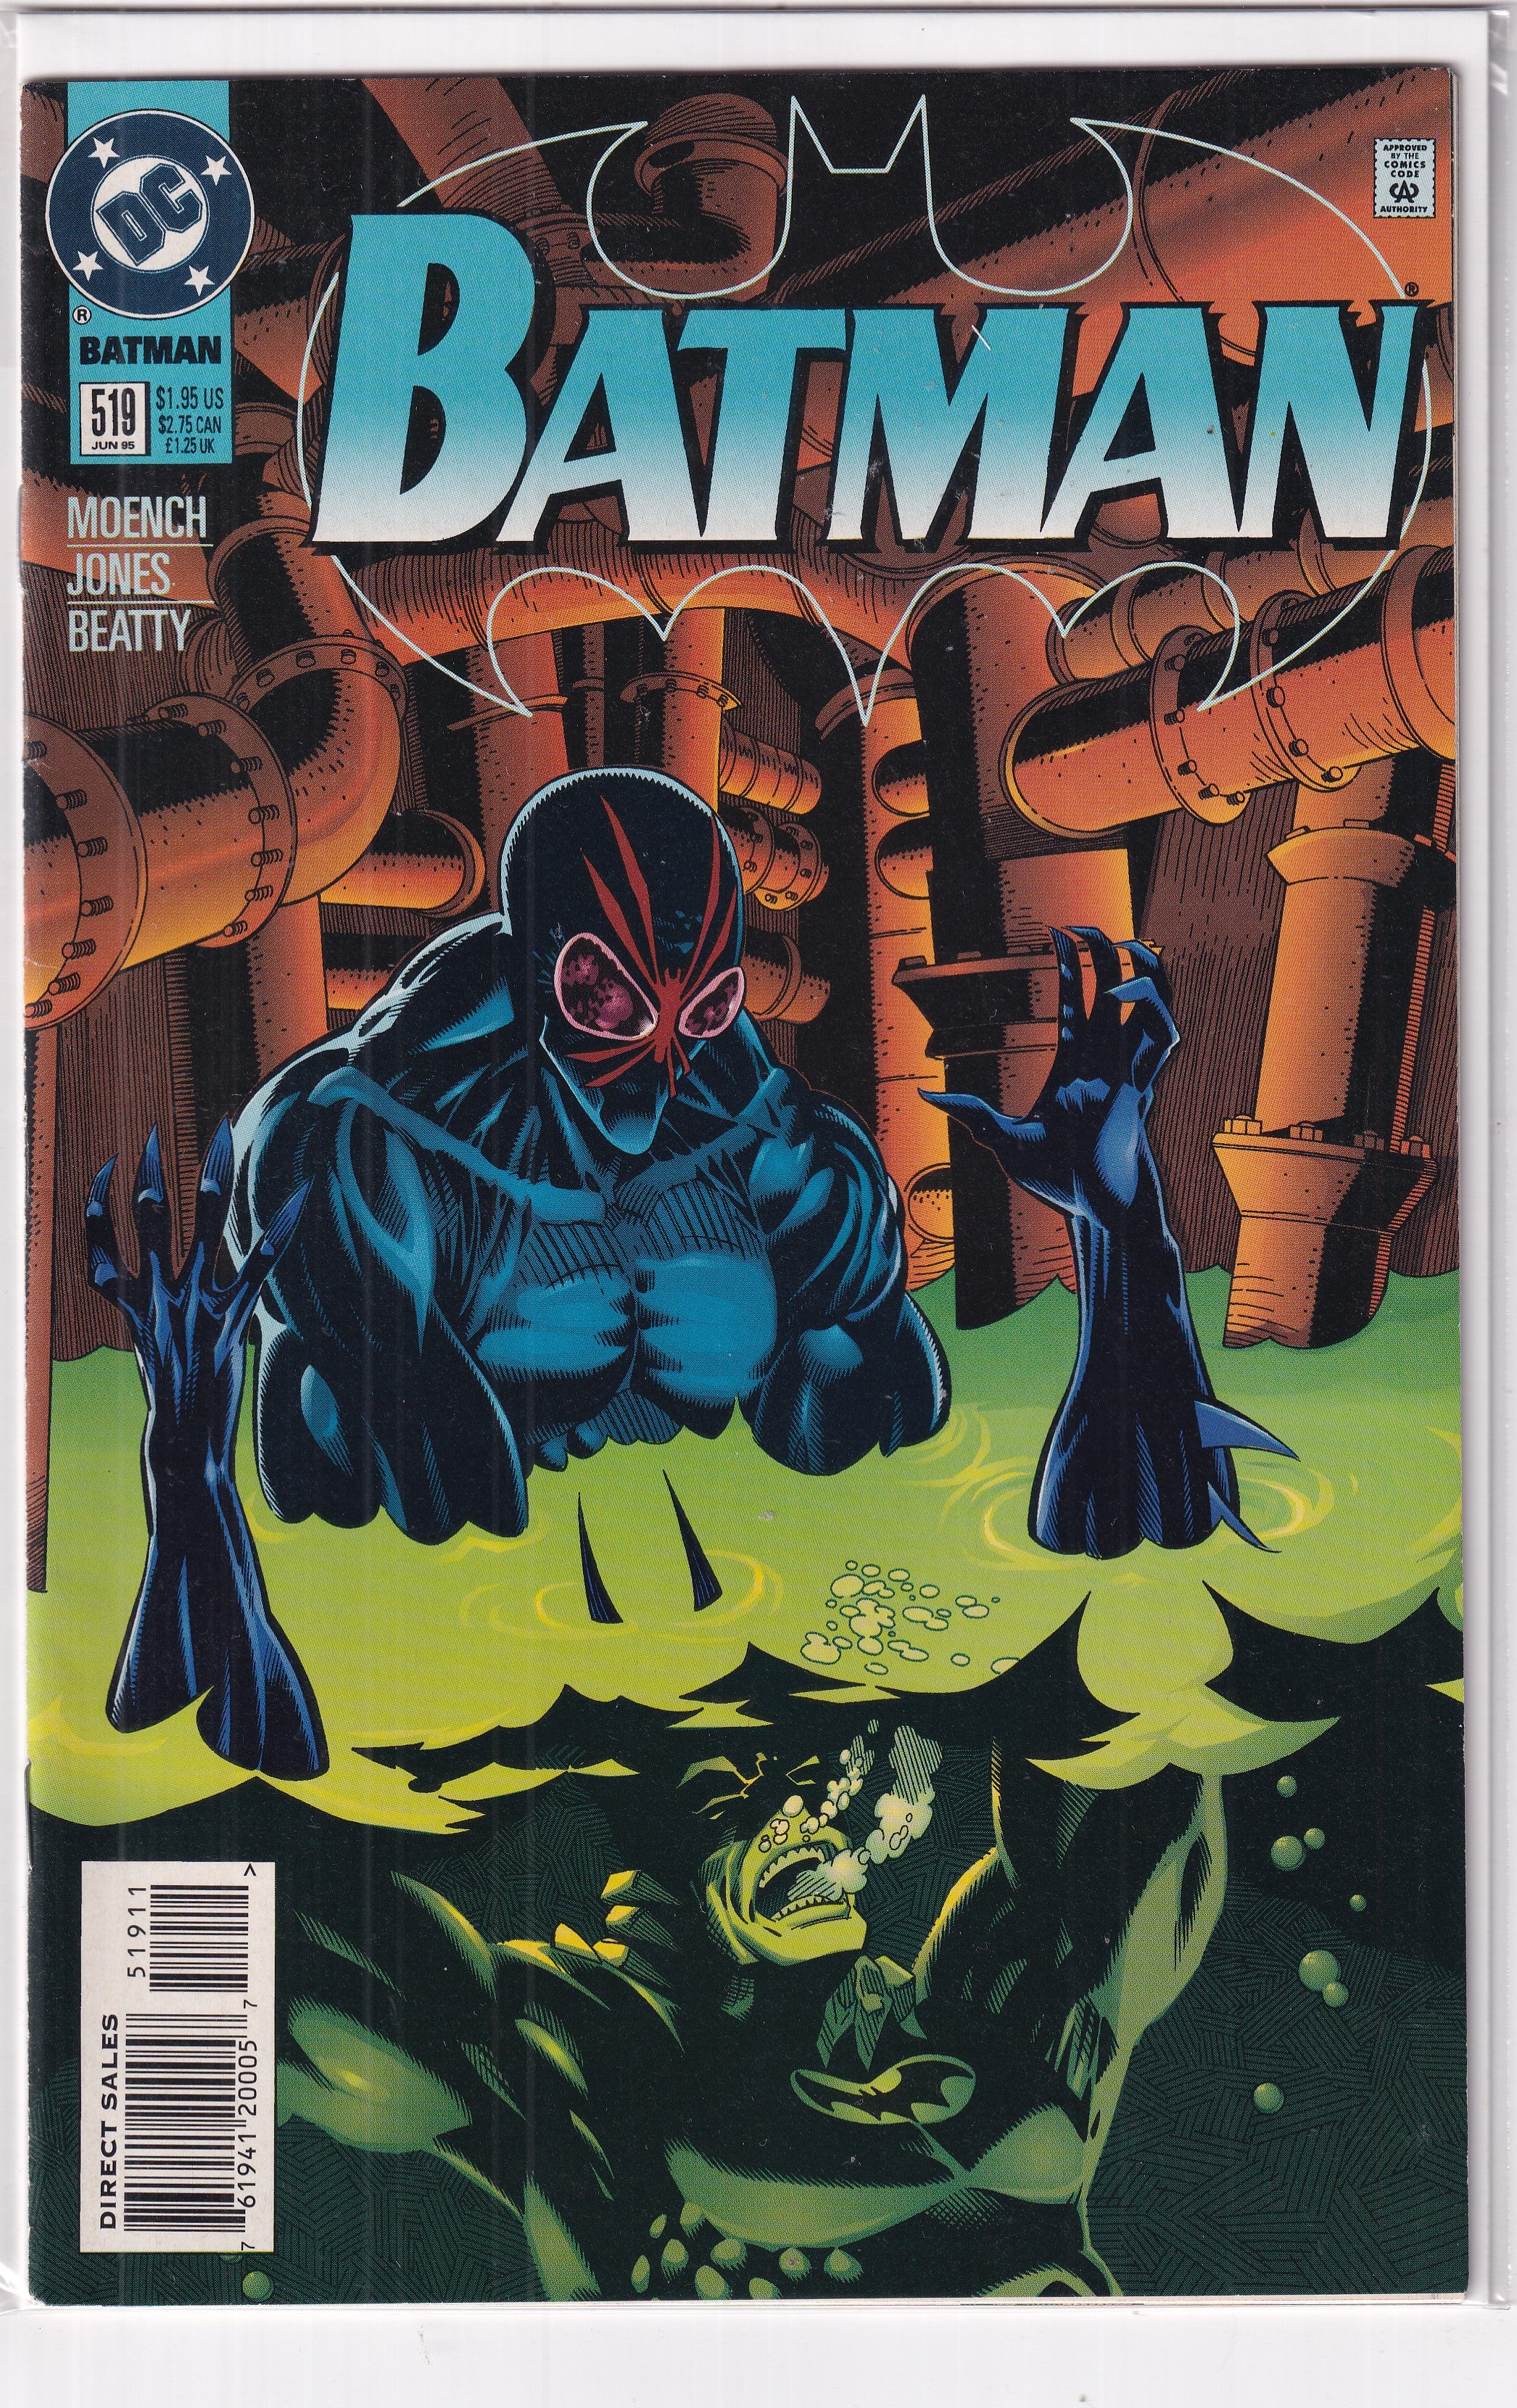 BATMAN #519 - Slab City Comics 